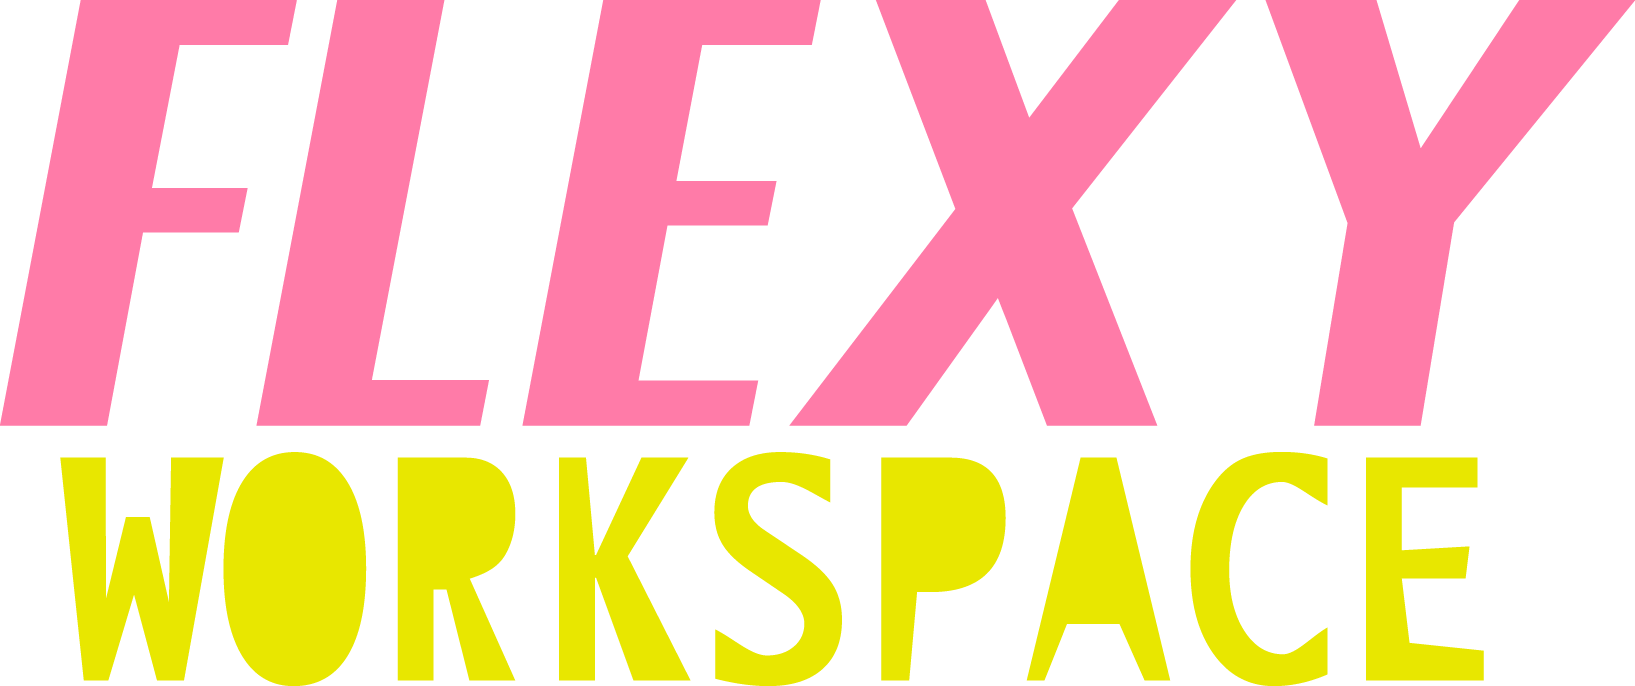 Flexy Workspace